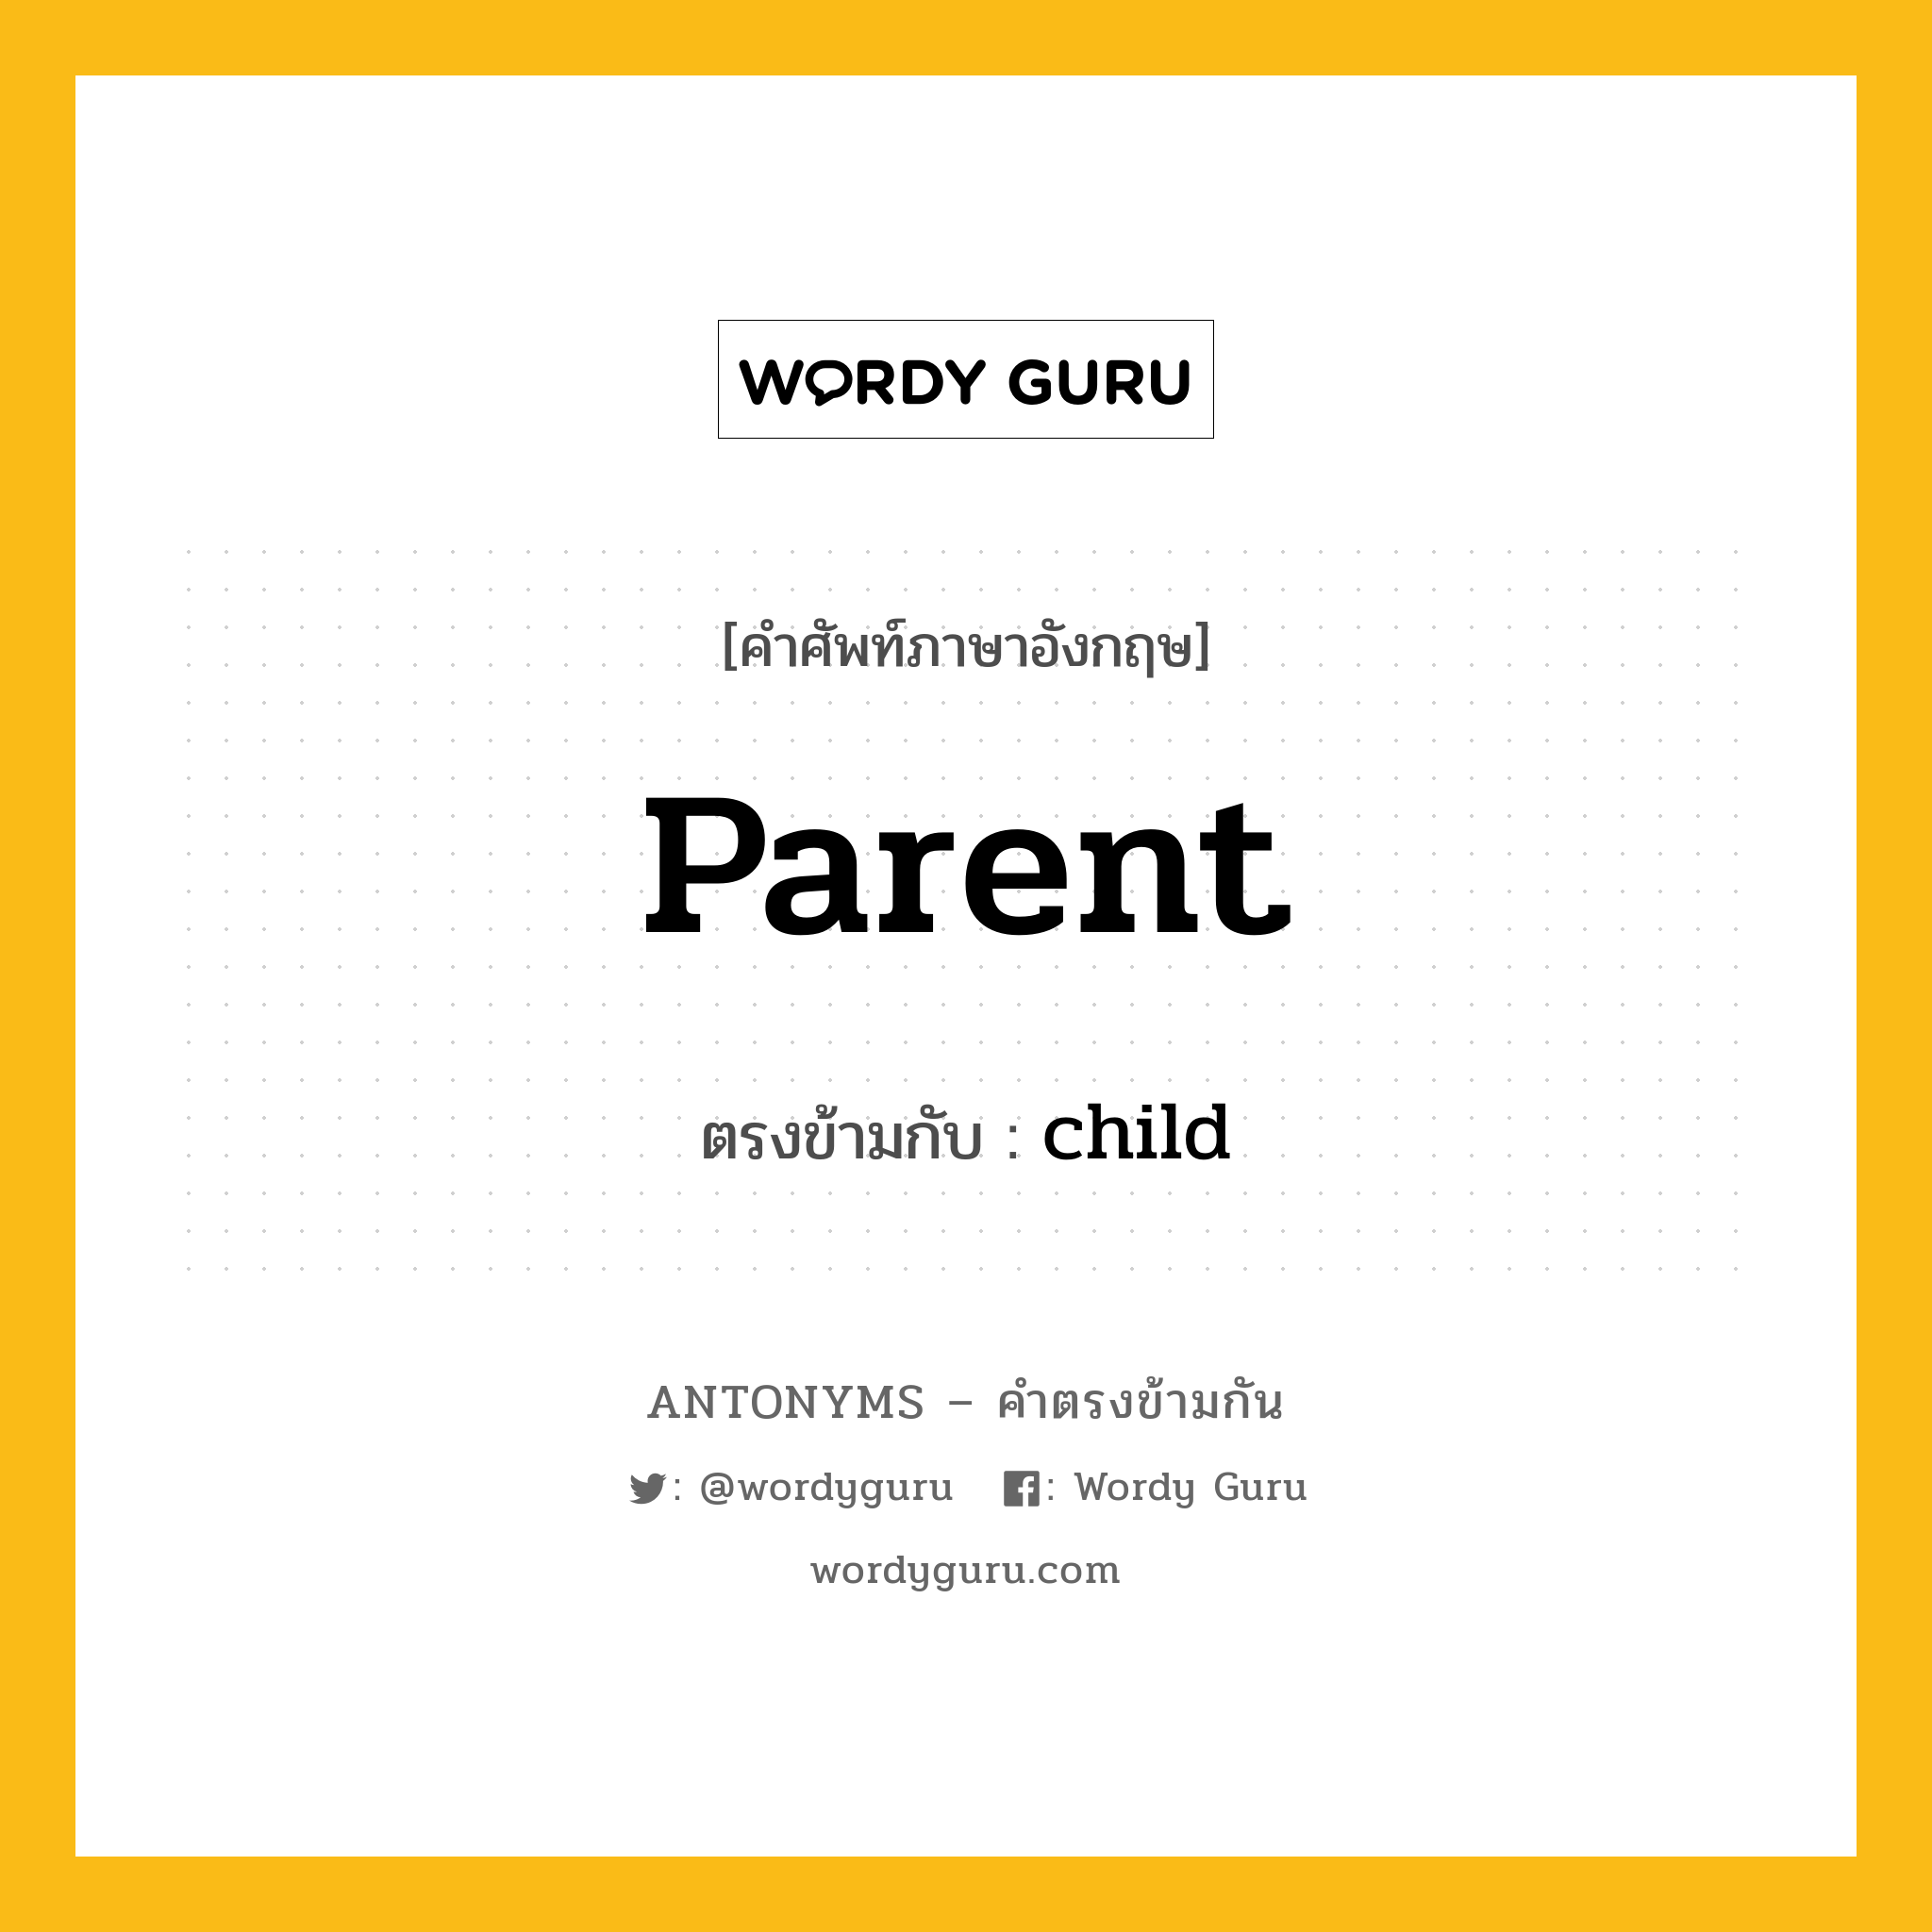 parent เป็นคำตรงข้ามกับคำไหนบ้าง?, คำศัพท์ภาษาอังกฤษ parent ตรงข้ามกับ child หมวด child